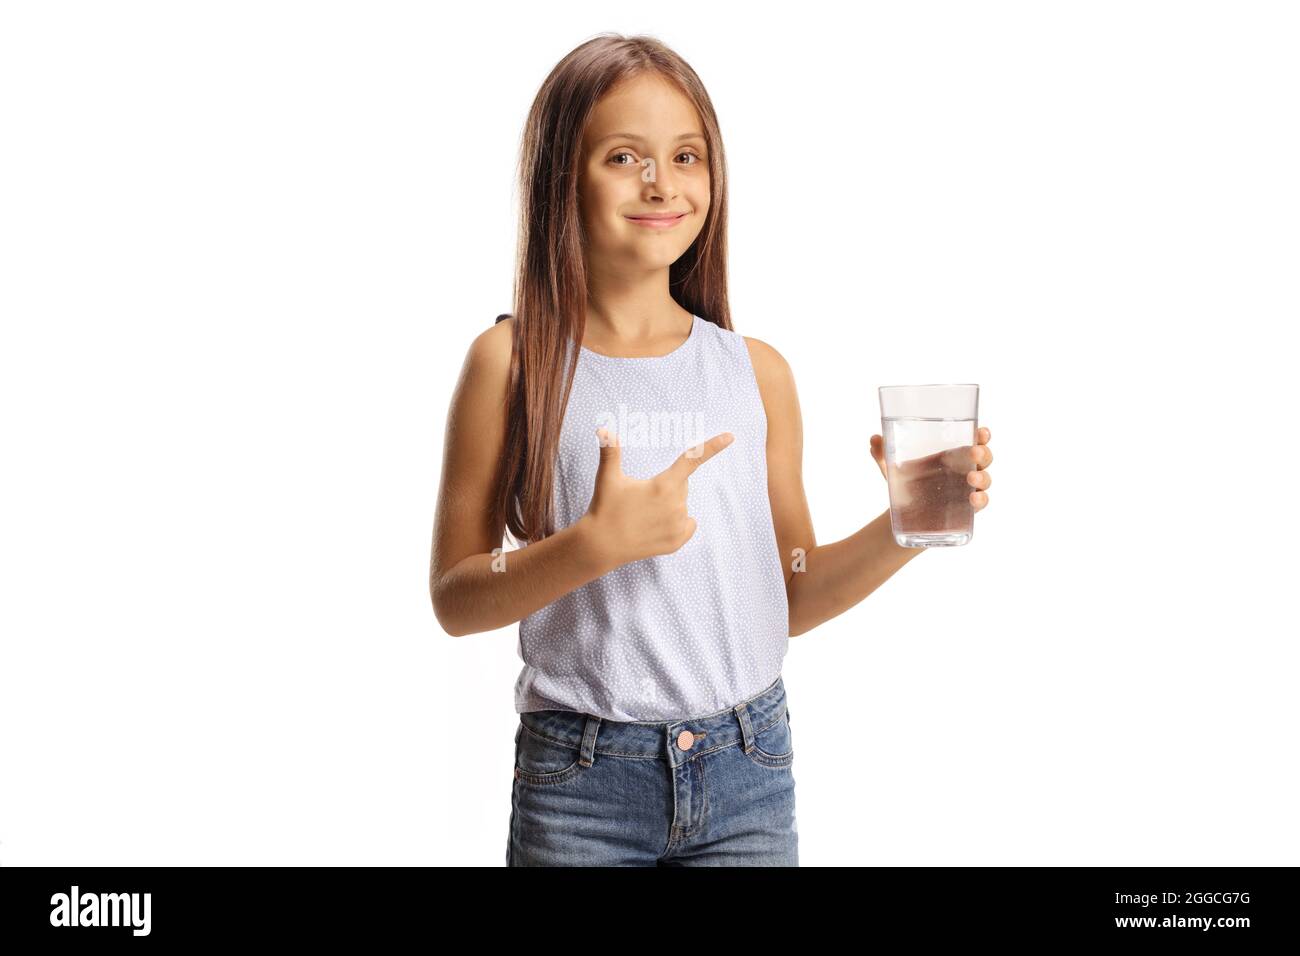 Jolie petite fille tenant un verre d'eau et pointant isolé sur fond blanc Banque D'Images